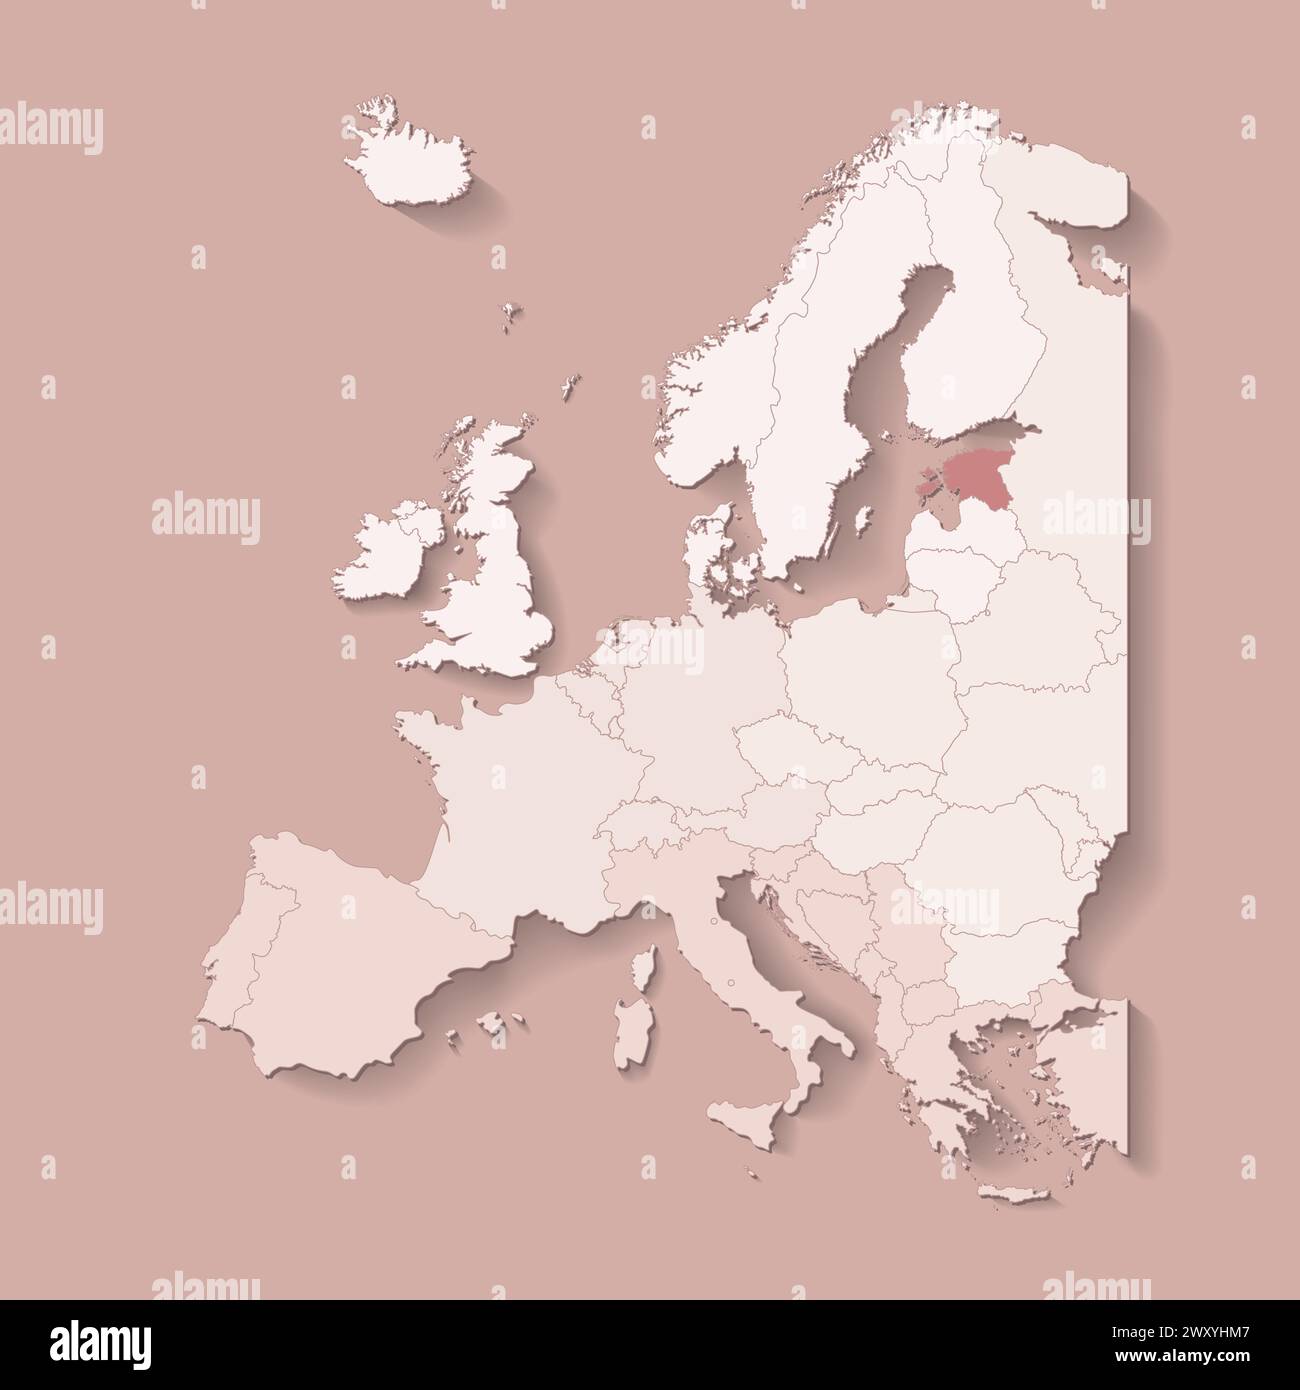 Illustrazione vettoriale con terra europea con confini di stati e paese contrassegnato Estonia. Mappa politica di colore marrone con occidentale, sud e così via Illustrazione Vettoriale